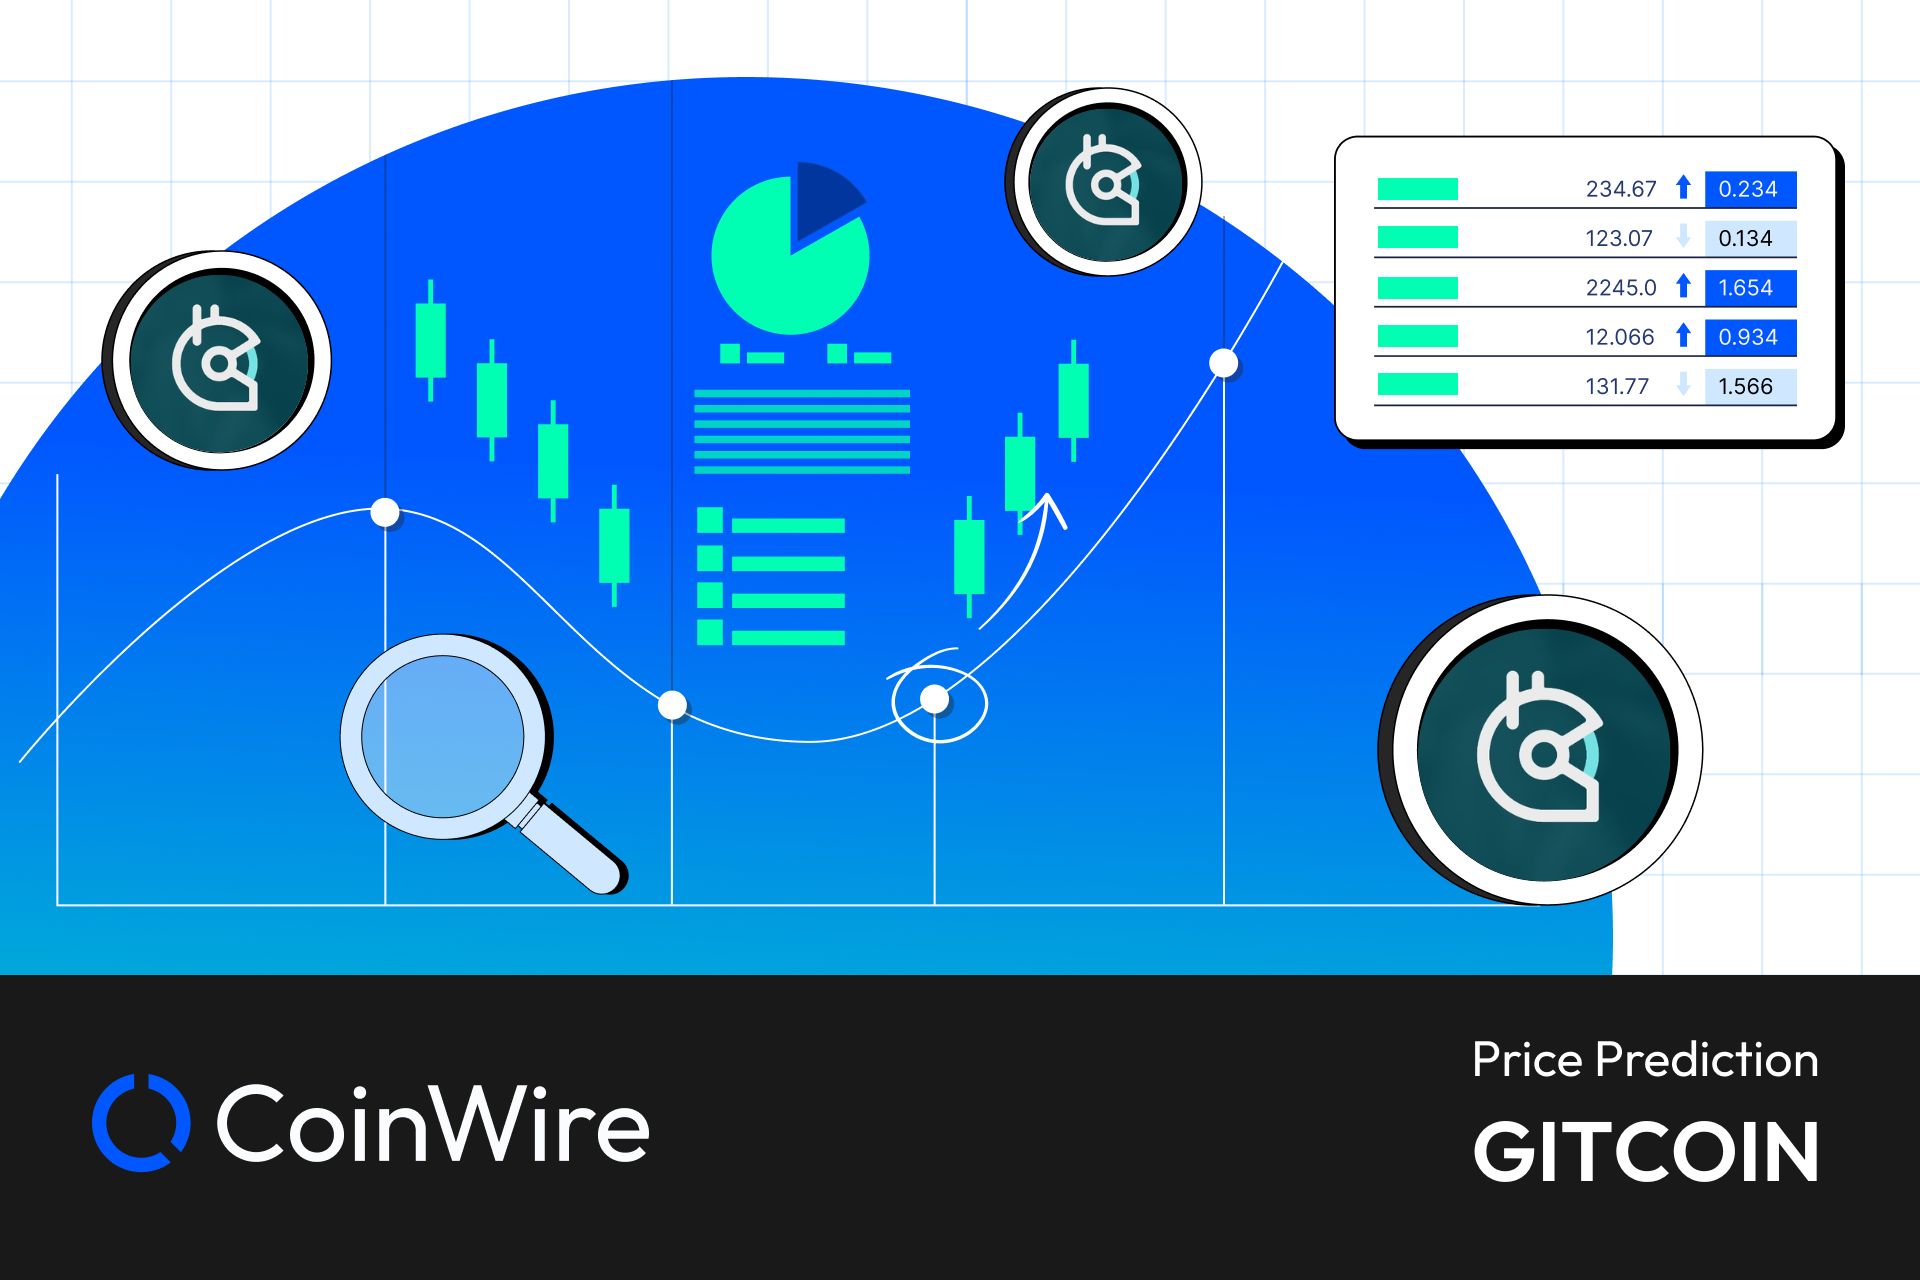 Gitcoin Price Prediction